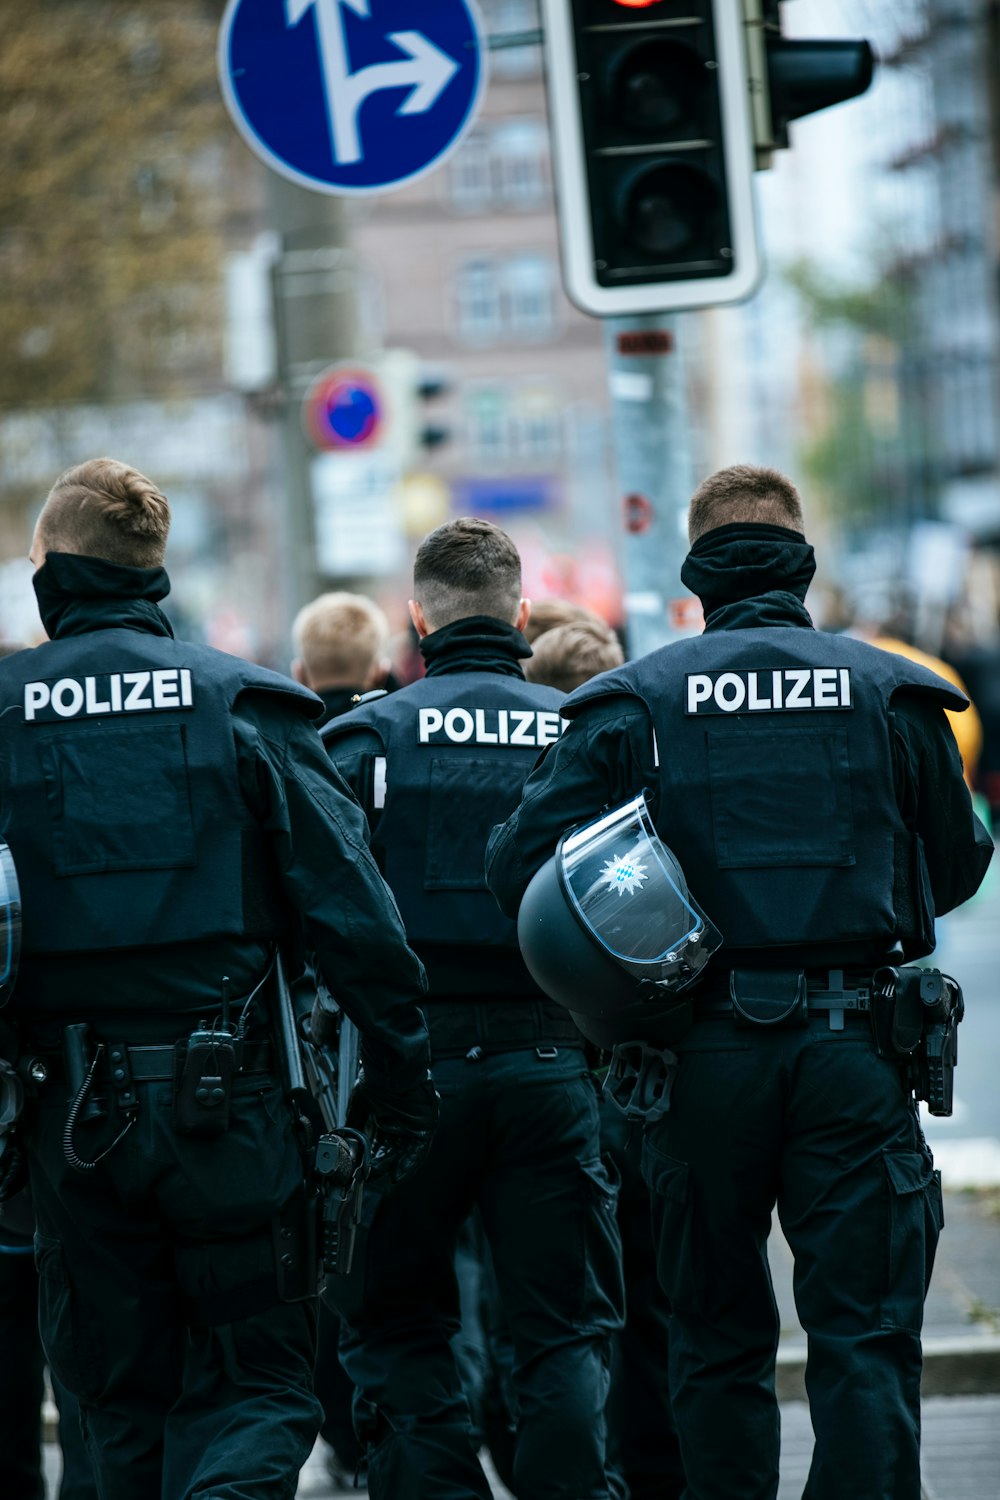 Polizisten in schwarz-blauer Polizeiuniform, die tagsüber auf der Straße stehen